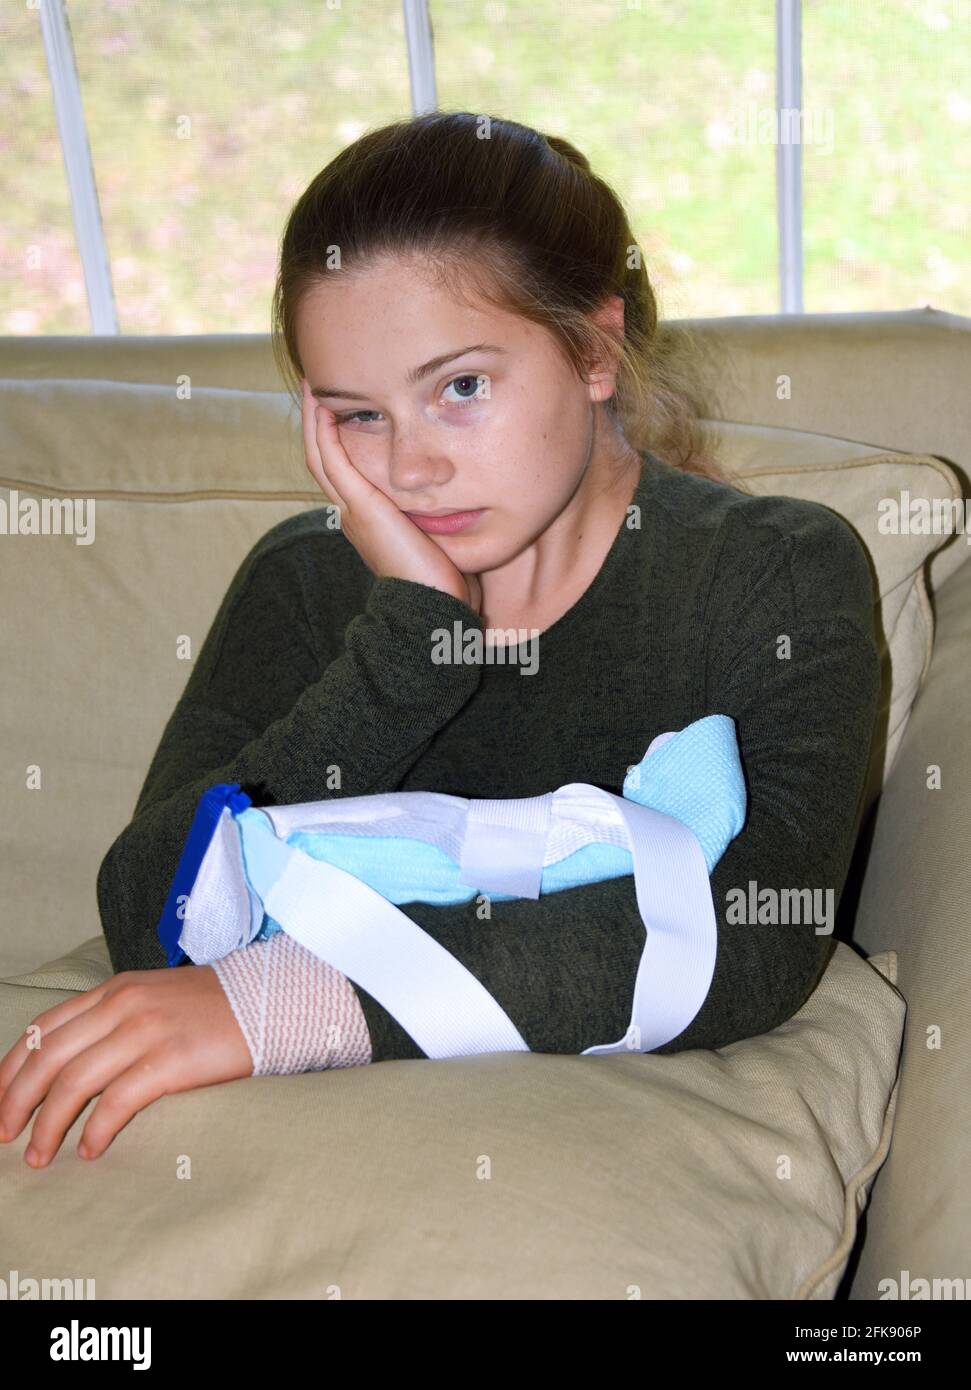 Une petite fille est assise, très découragée, avec un bloc de glace sur son bras. La blessure est enveloppée de bandage et repose sur un oreiller à l'intérieur de sa maison. Elle est repos Banque D'Images